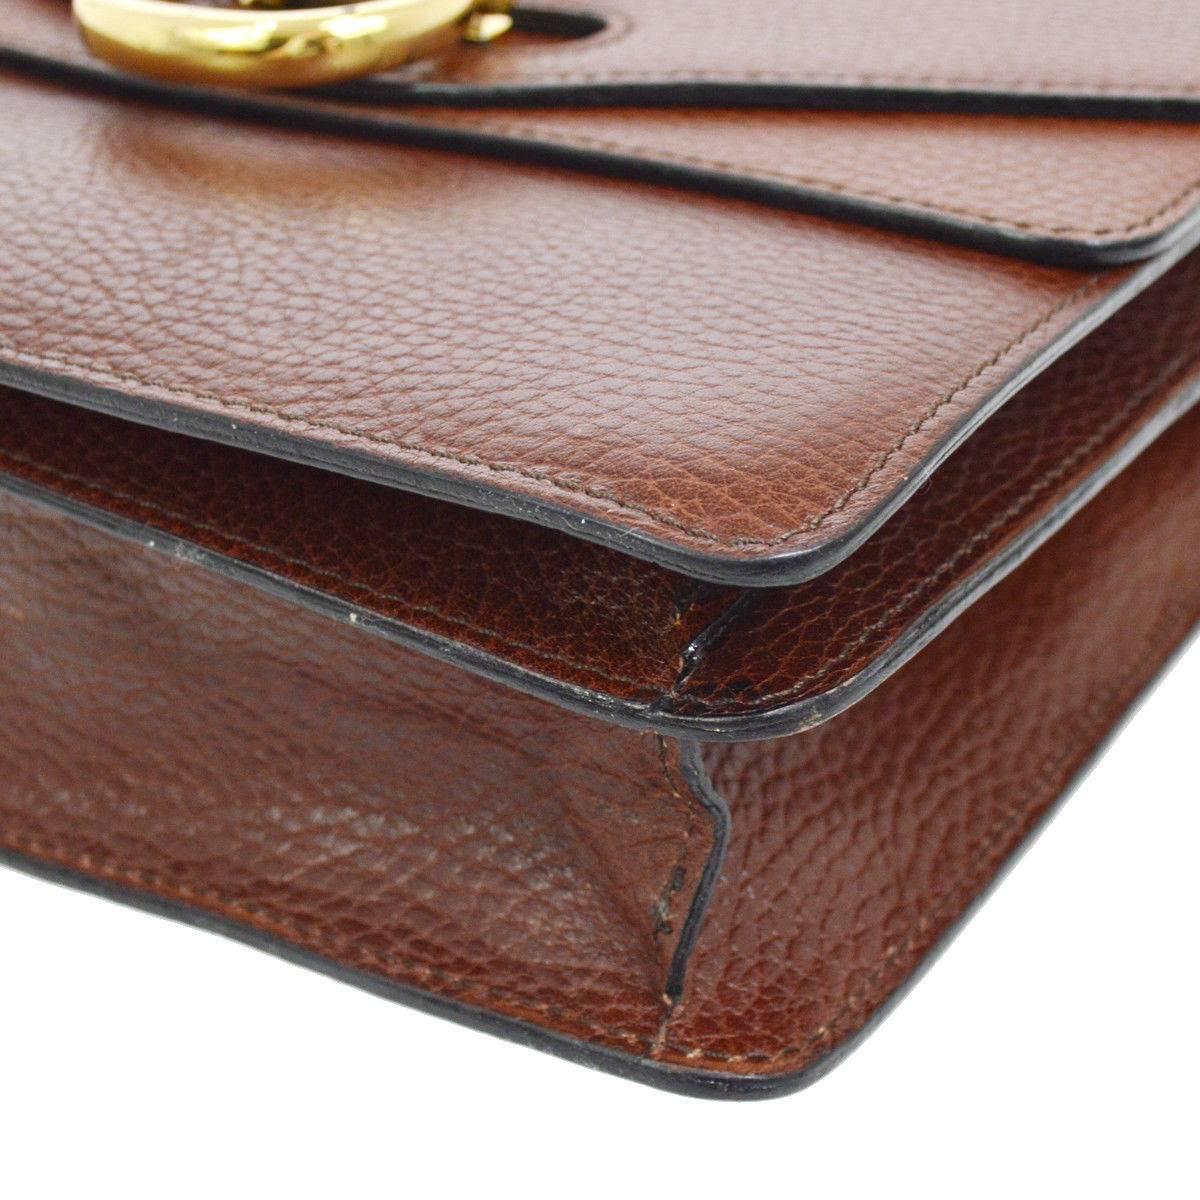 Women's Celine Cognac Leather Gold Kelly Style Evening Top Handle Satchel Flap Bag